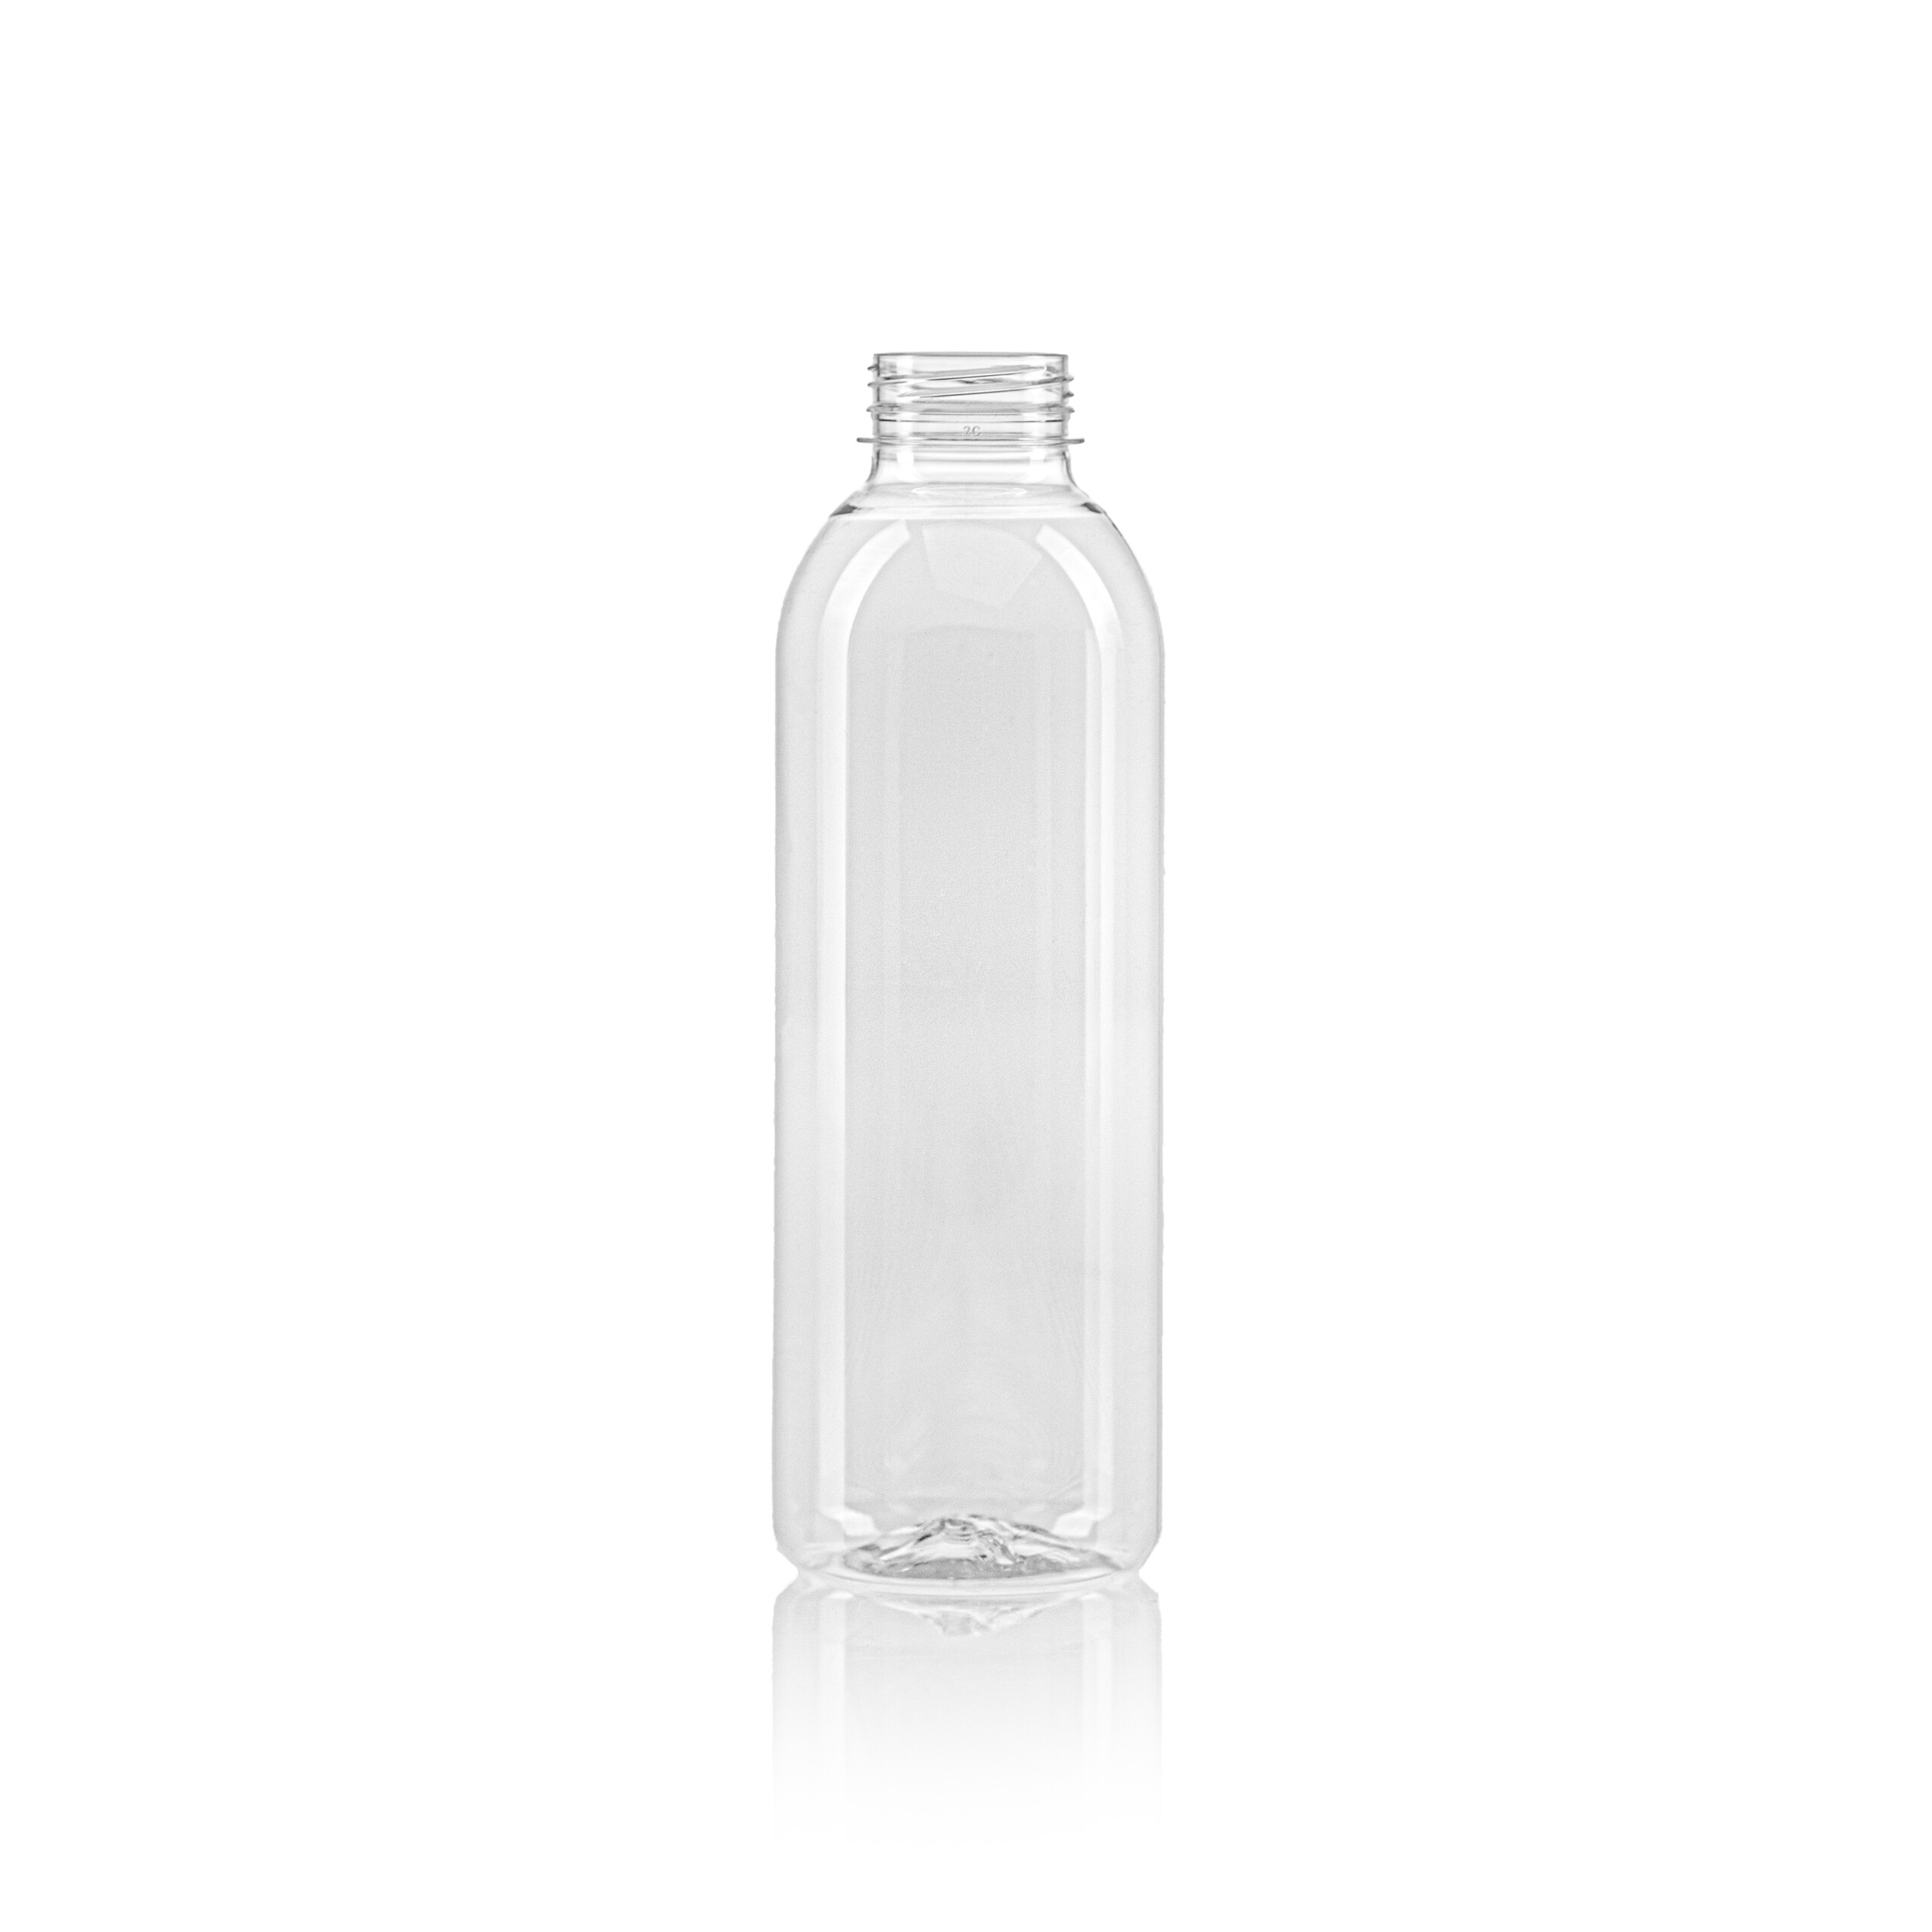 PET juice bottle round 750ml scaled Beverage